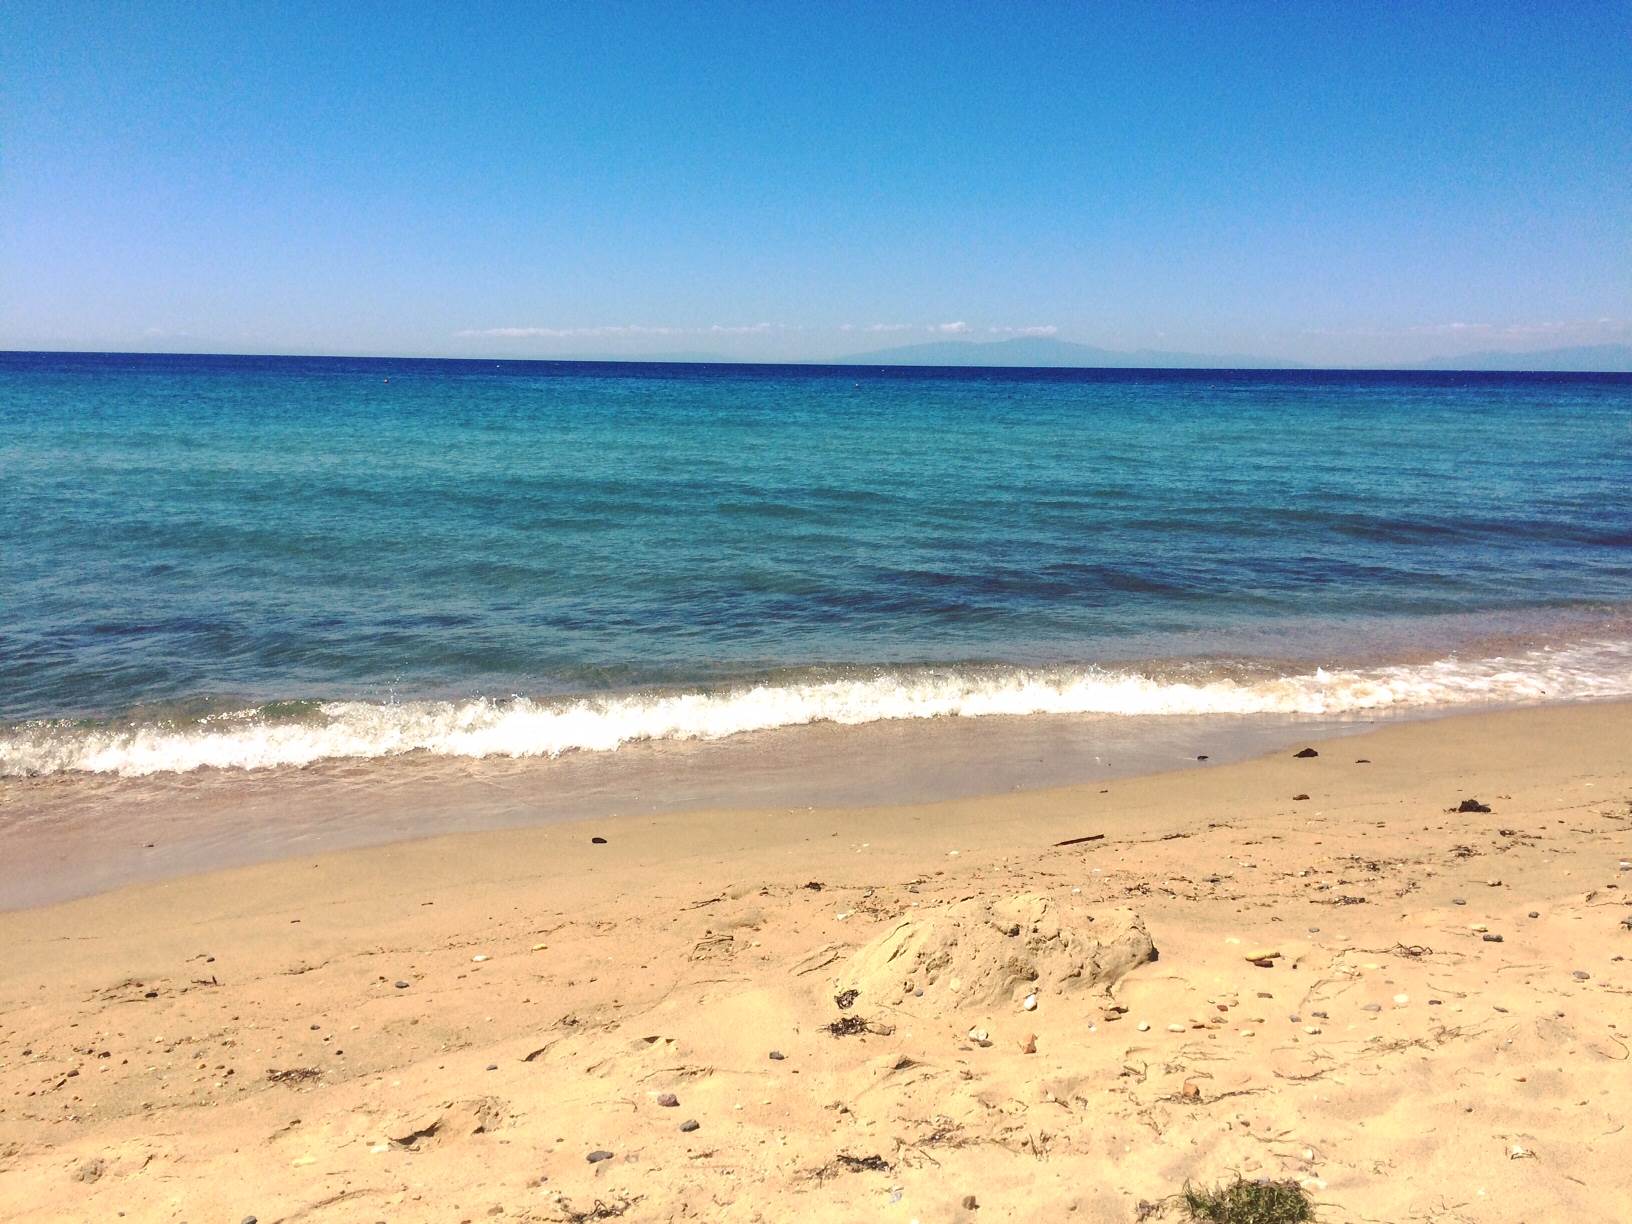  Sardinija nošenje peska s plaže kazne 